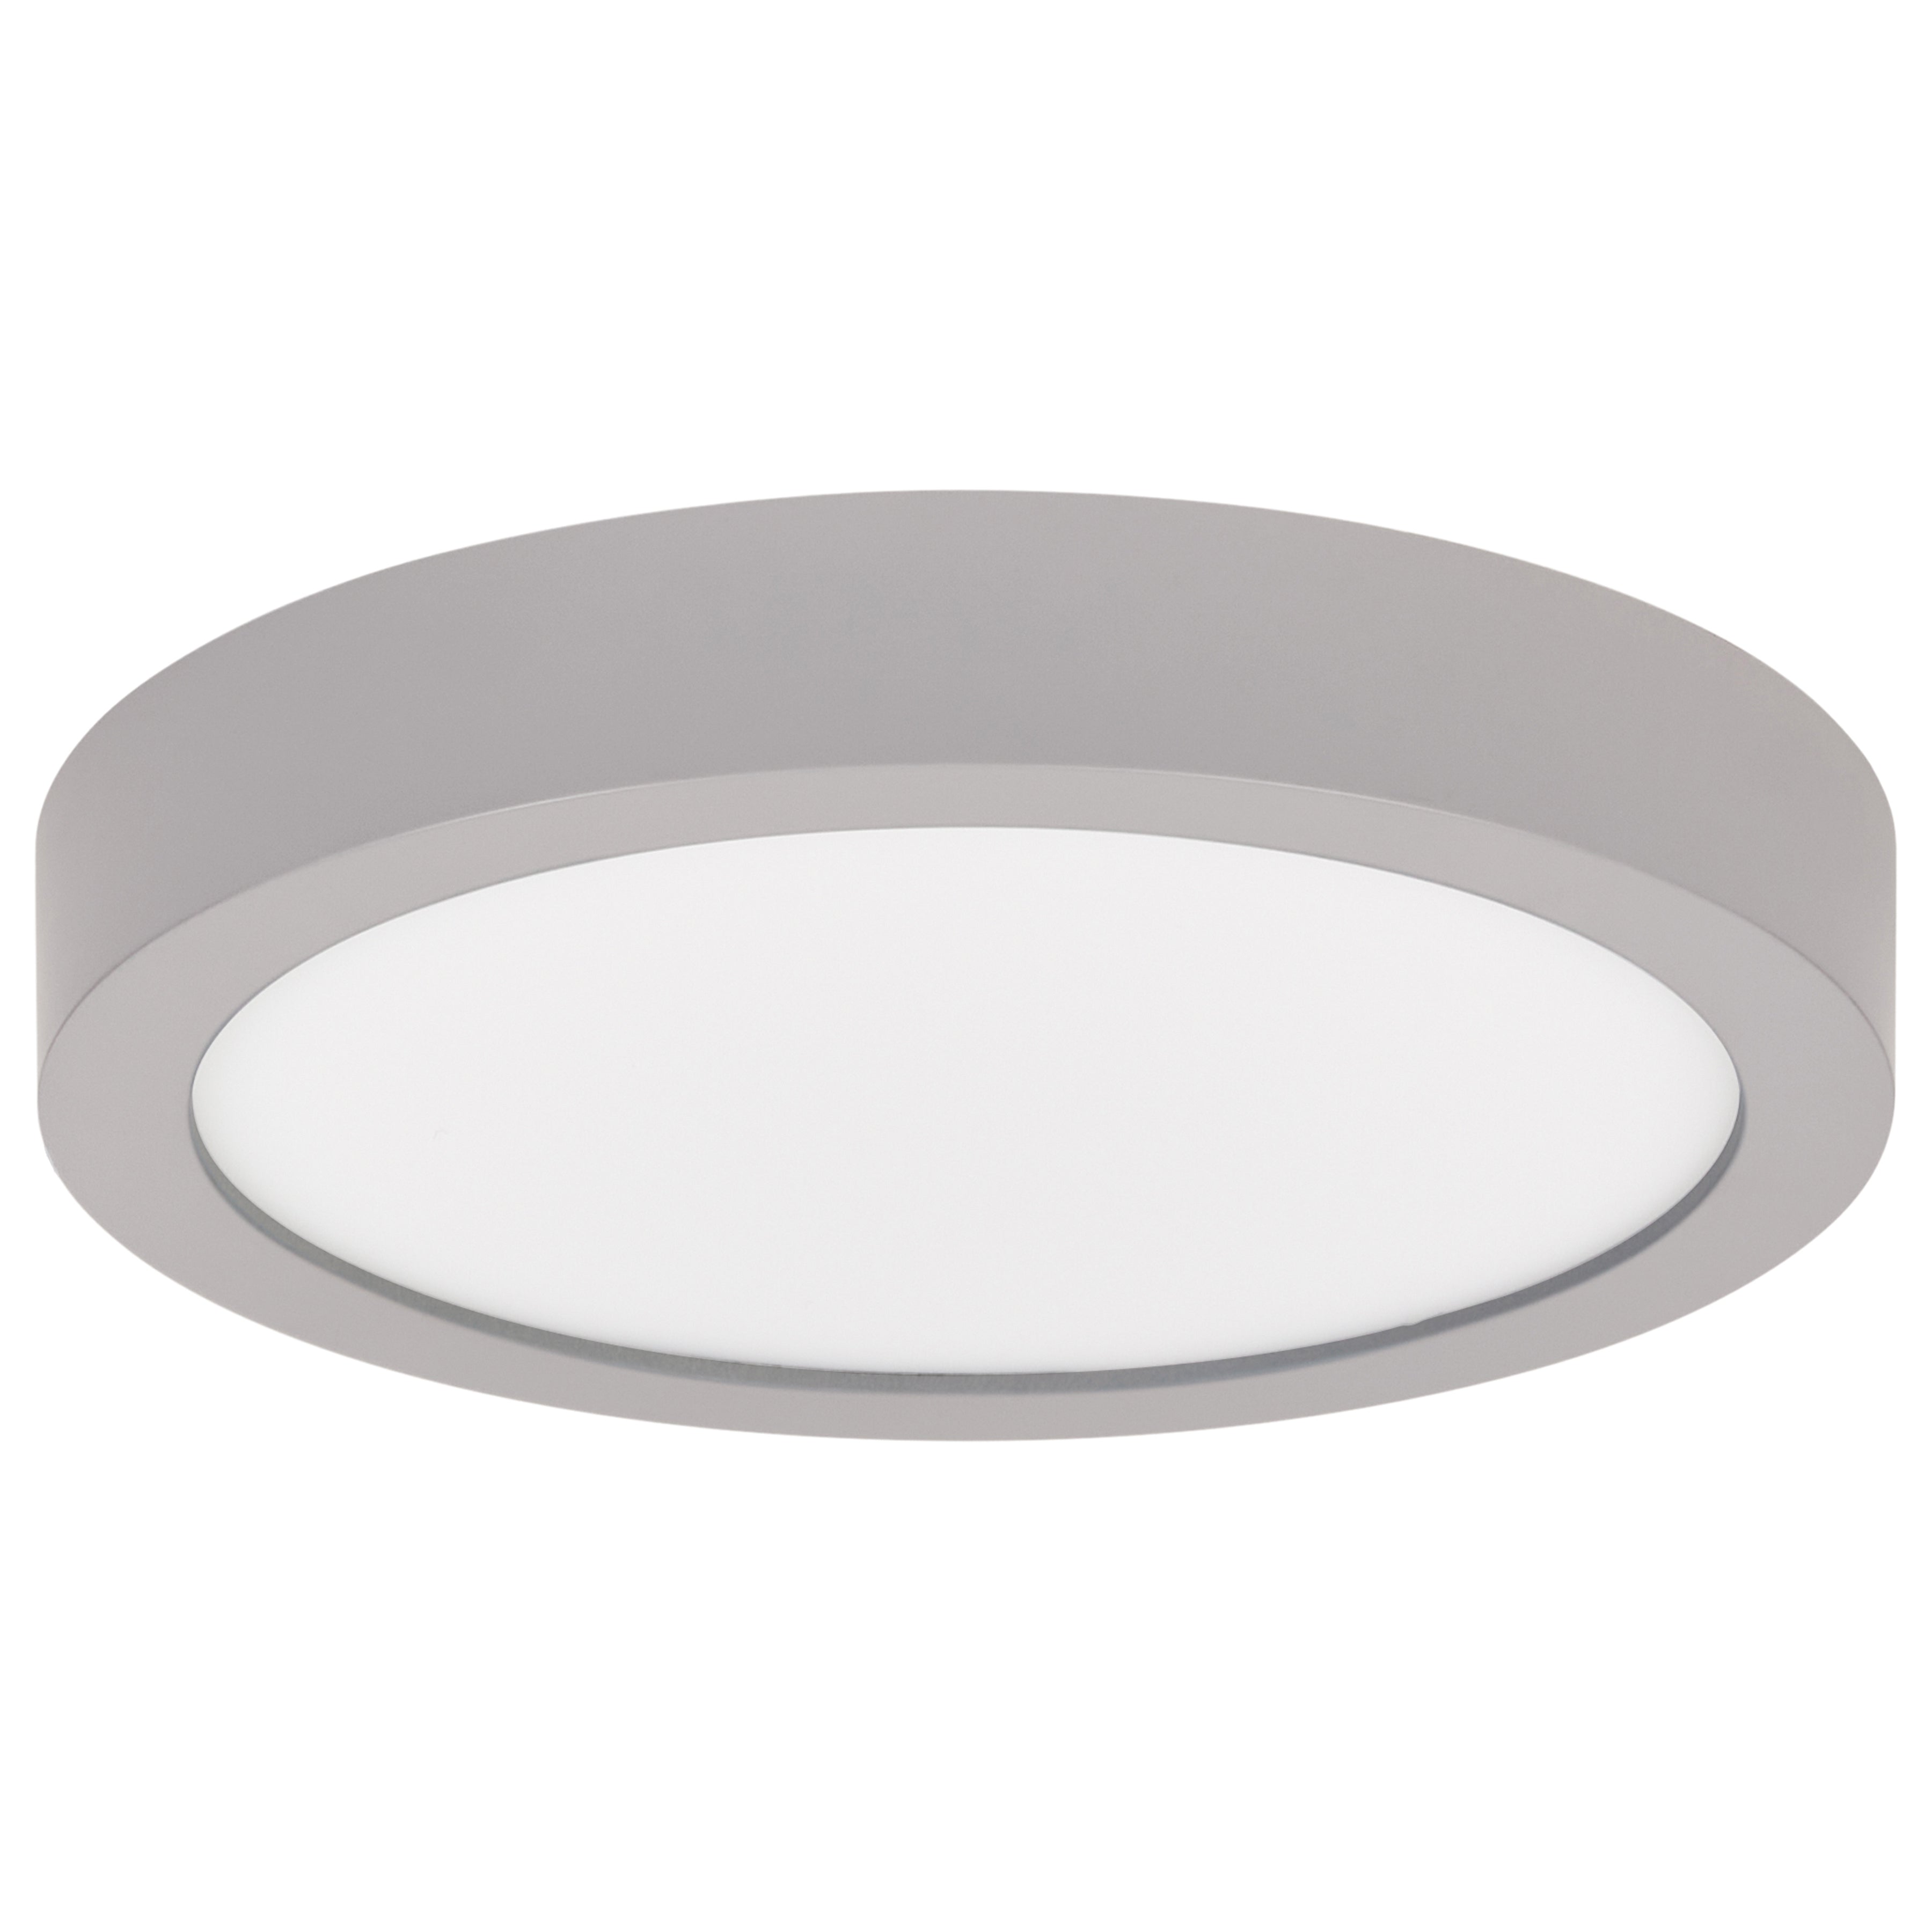 Ulko SQ 5.5" Round Outdoor LED Flush Mount Ceiling Light